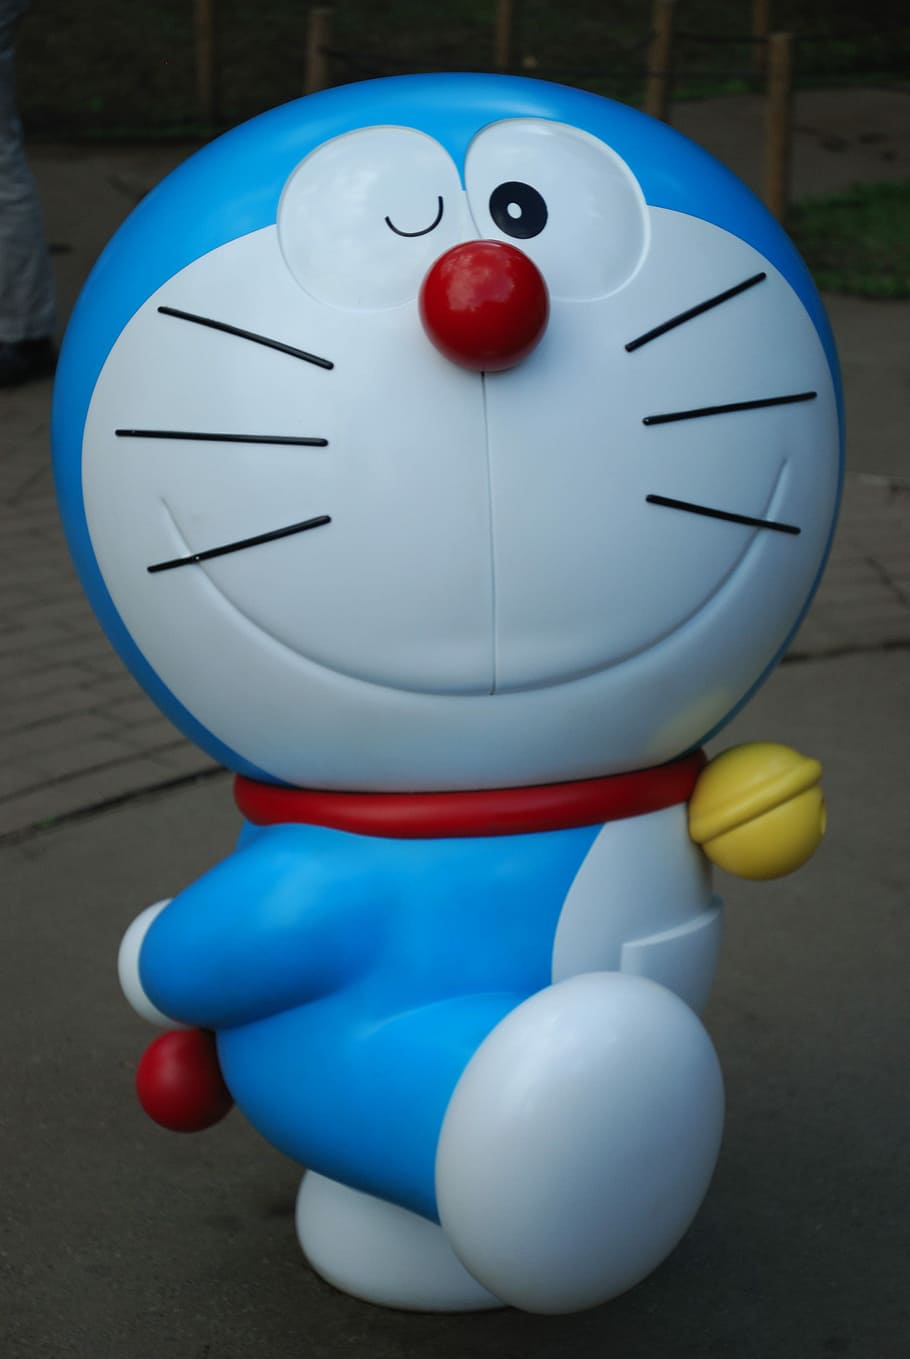 doraemon toy, Doraemon, Anime, Japan, Cat, dorachan, anime, japan, symbol, toy, fun